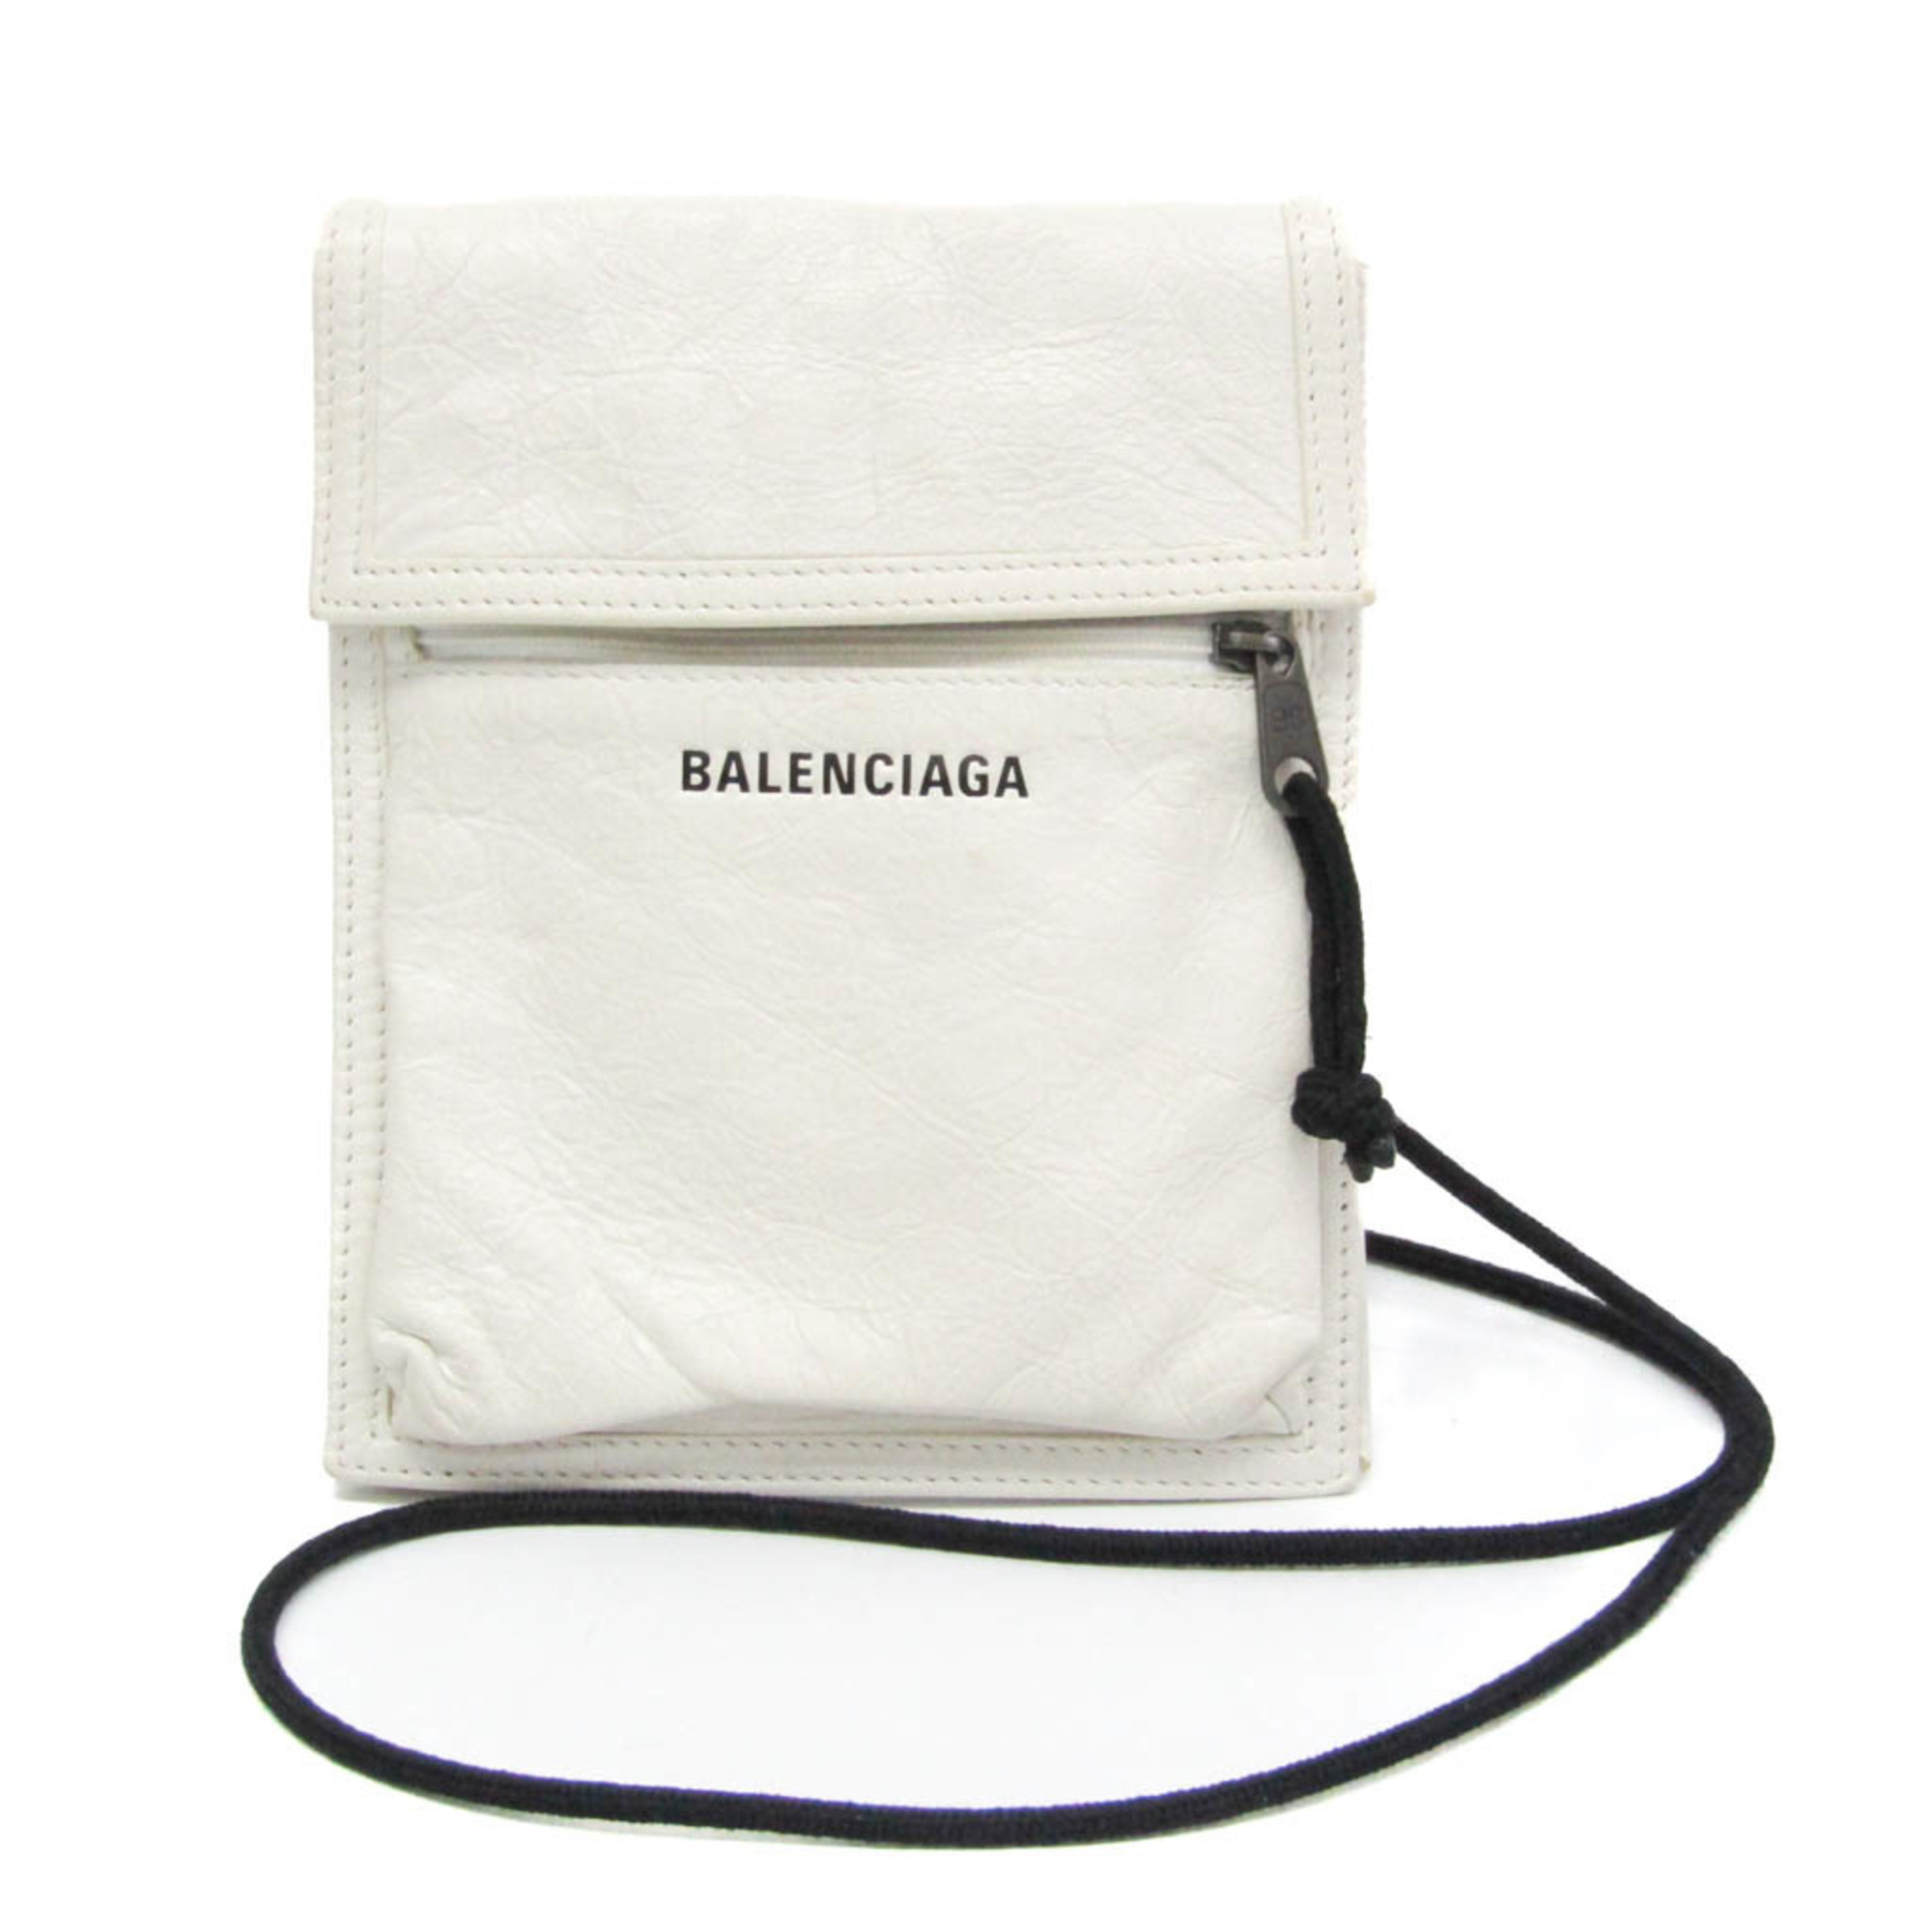 バレンシアガ(Balenciaga) EXPLORER POUCH 532298 メンズ,レディース レザー ショルダーバッグ オフホワイト